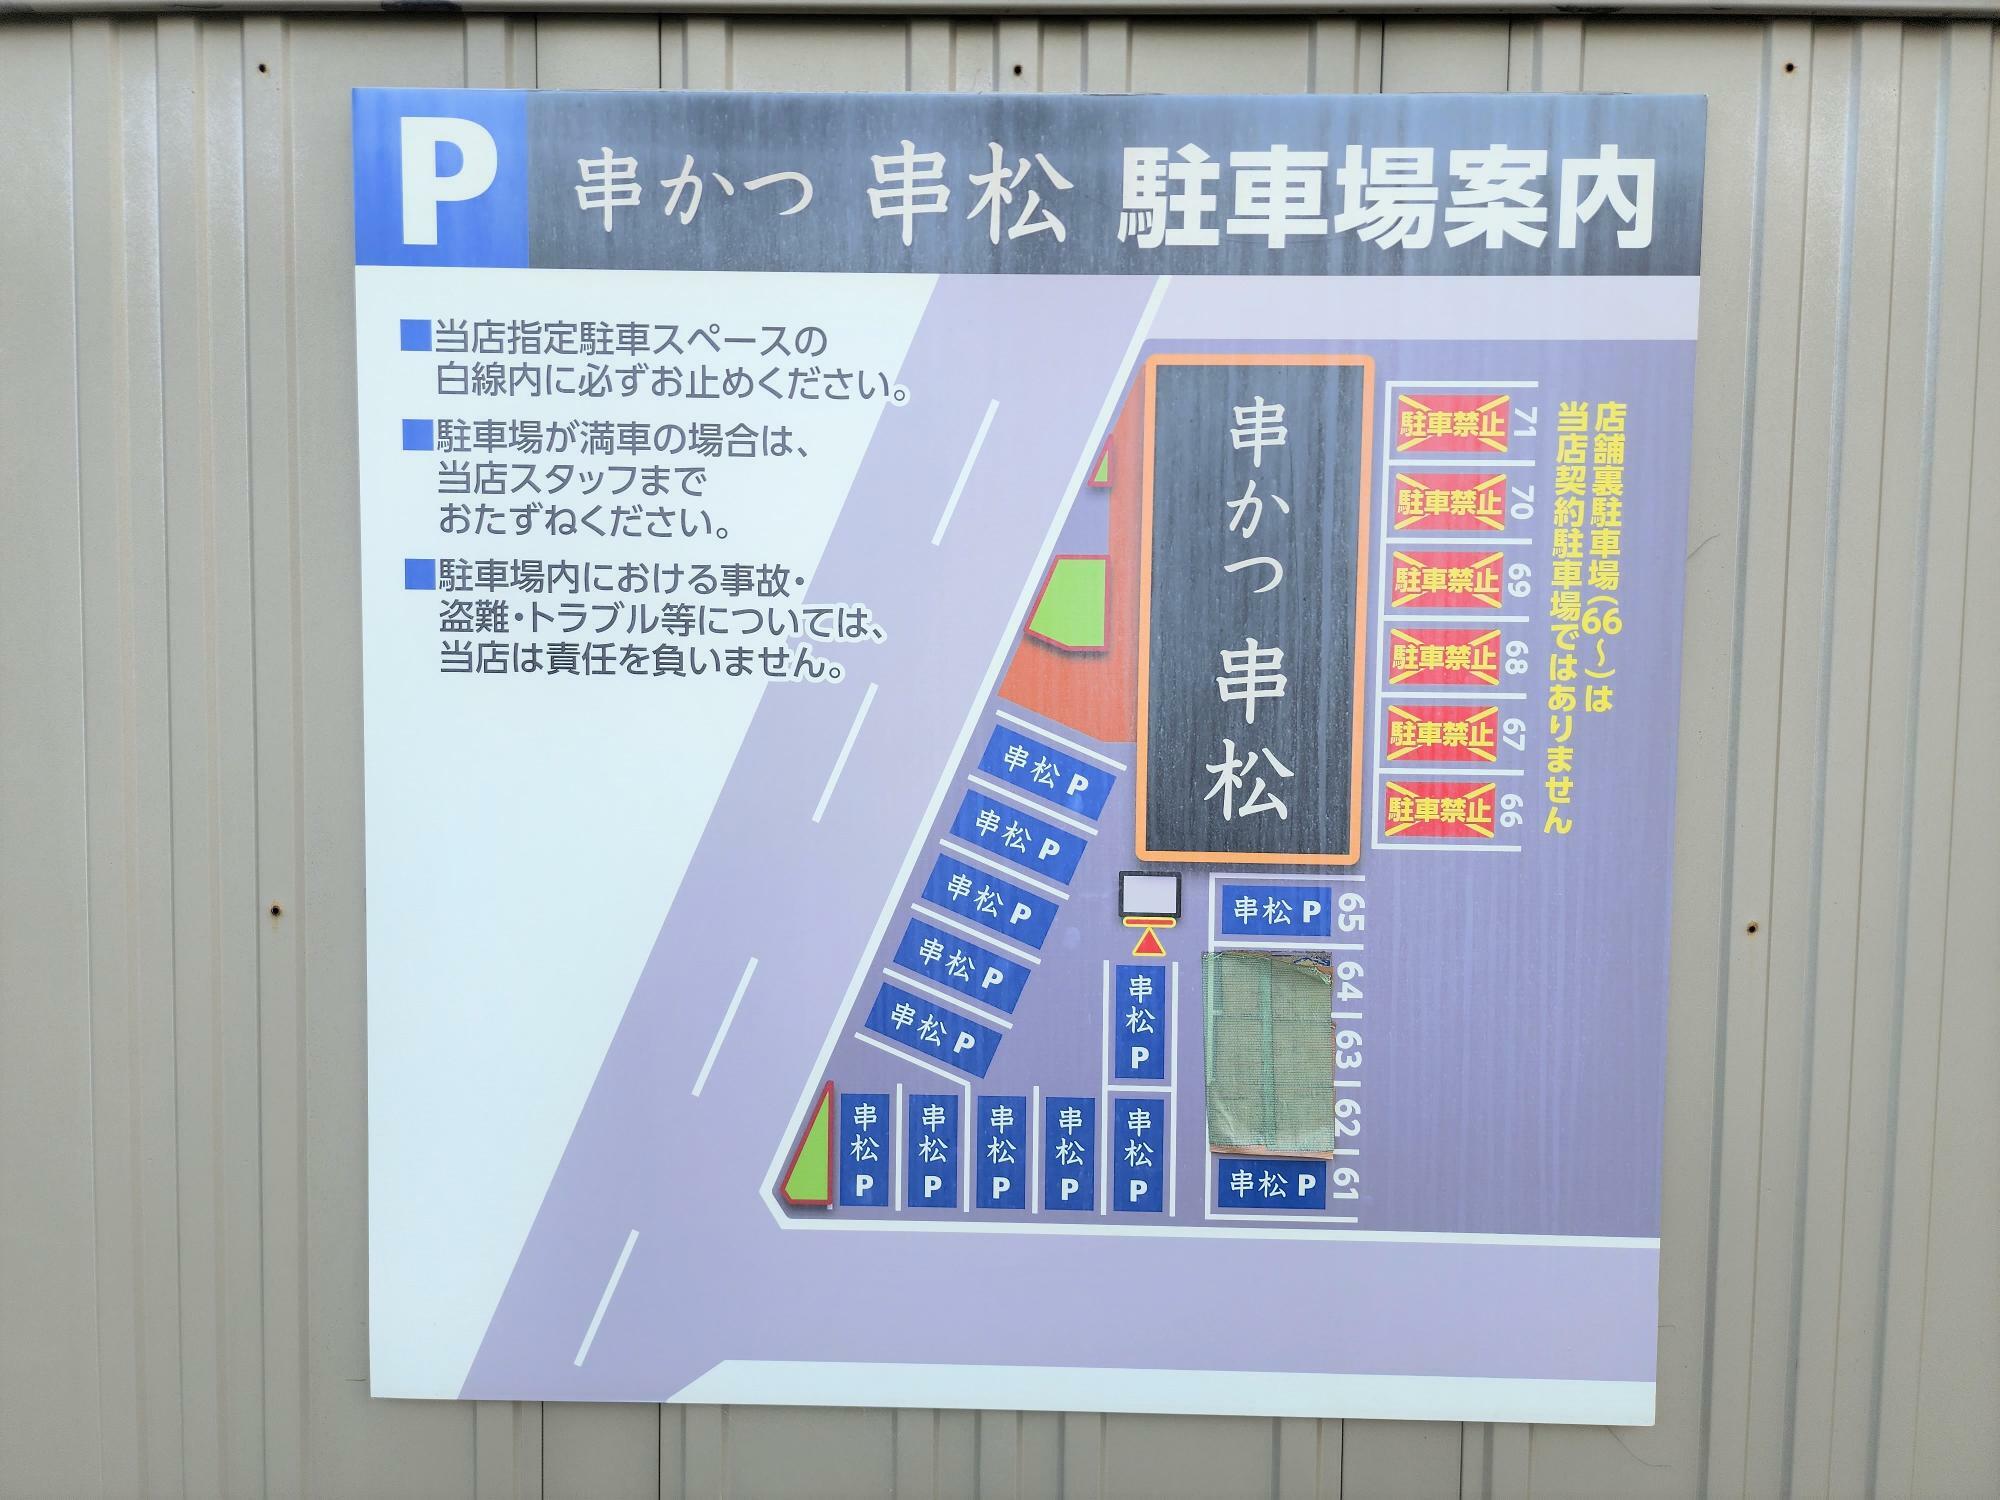 「串松 前川店」店舗周辺にある駐車場に関する案内看板。